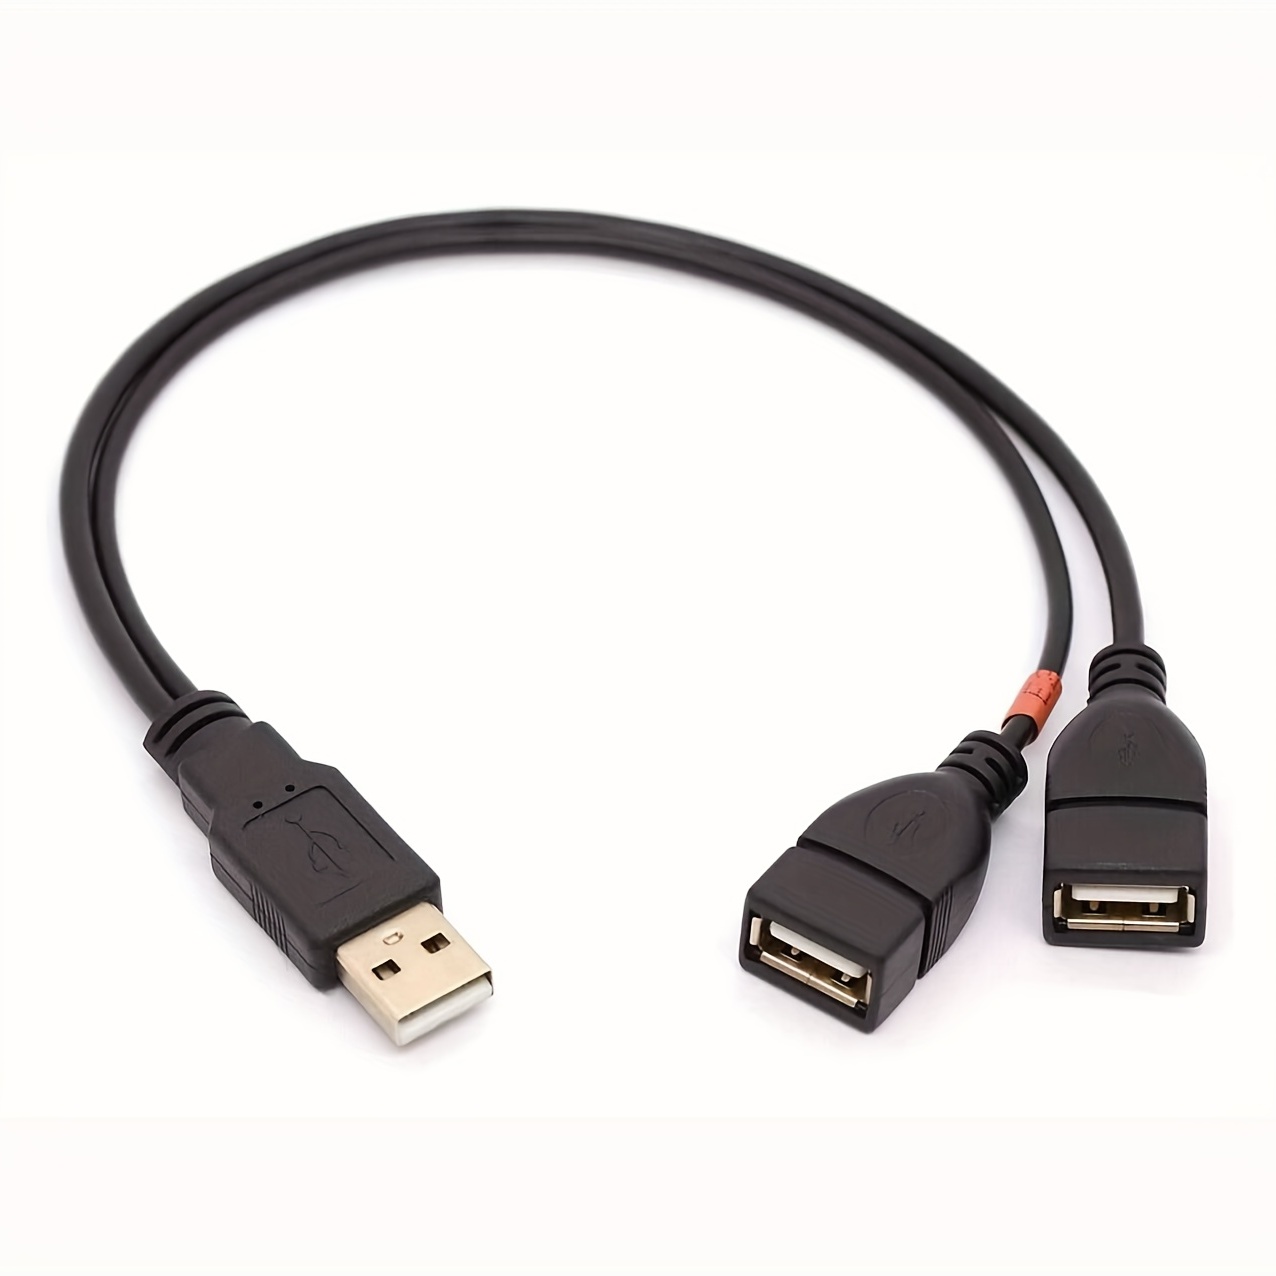 Electop Câble répartiteur USB 2.0 femelle vers mâle, USB A mâle vers double  USB femelle Jack Y (un port pour le transfert de données)